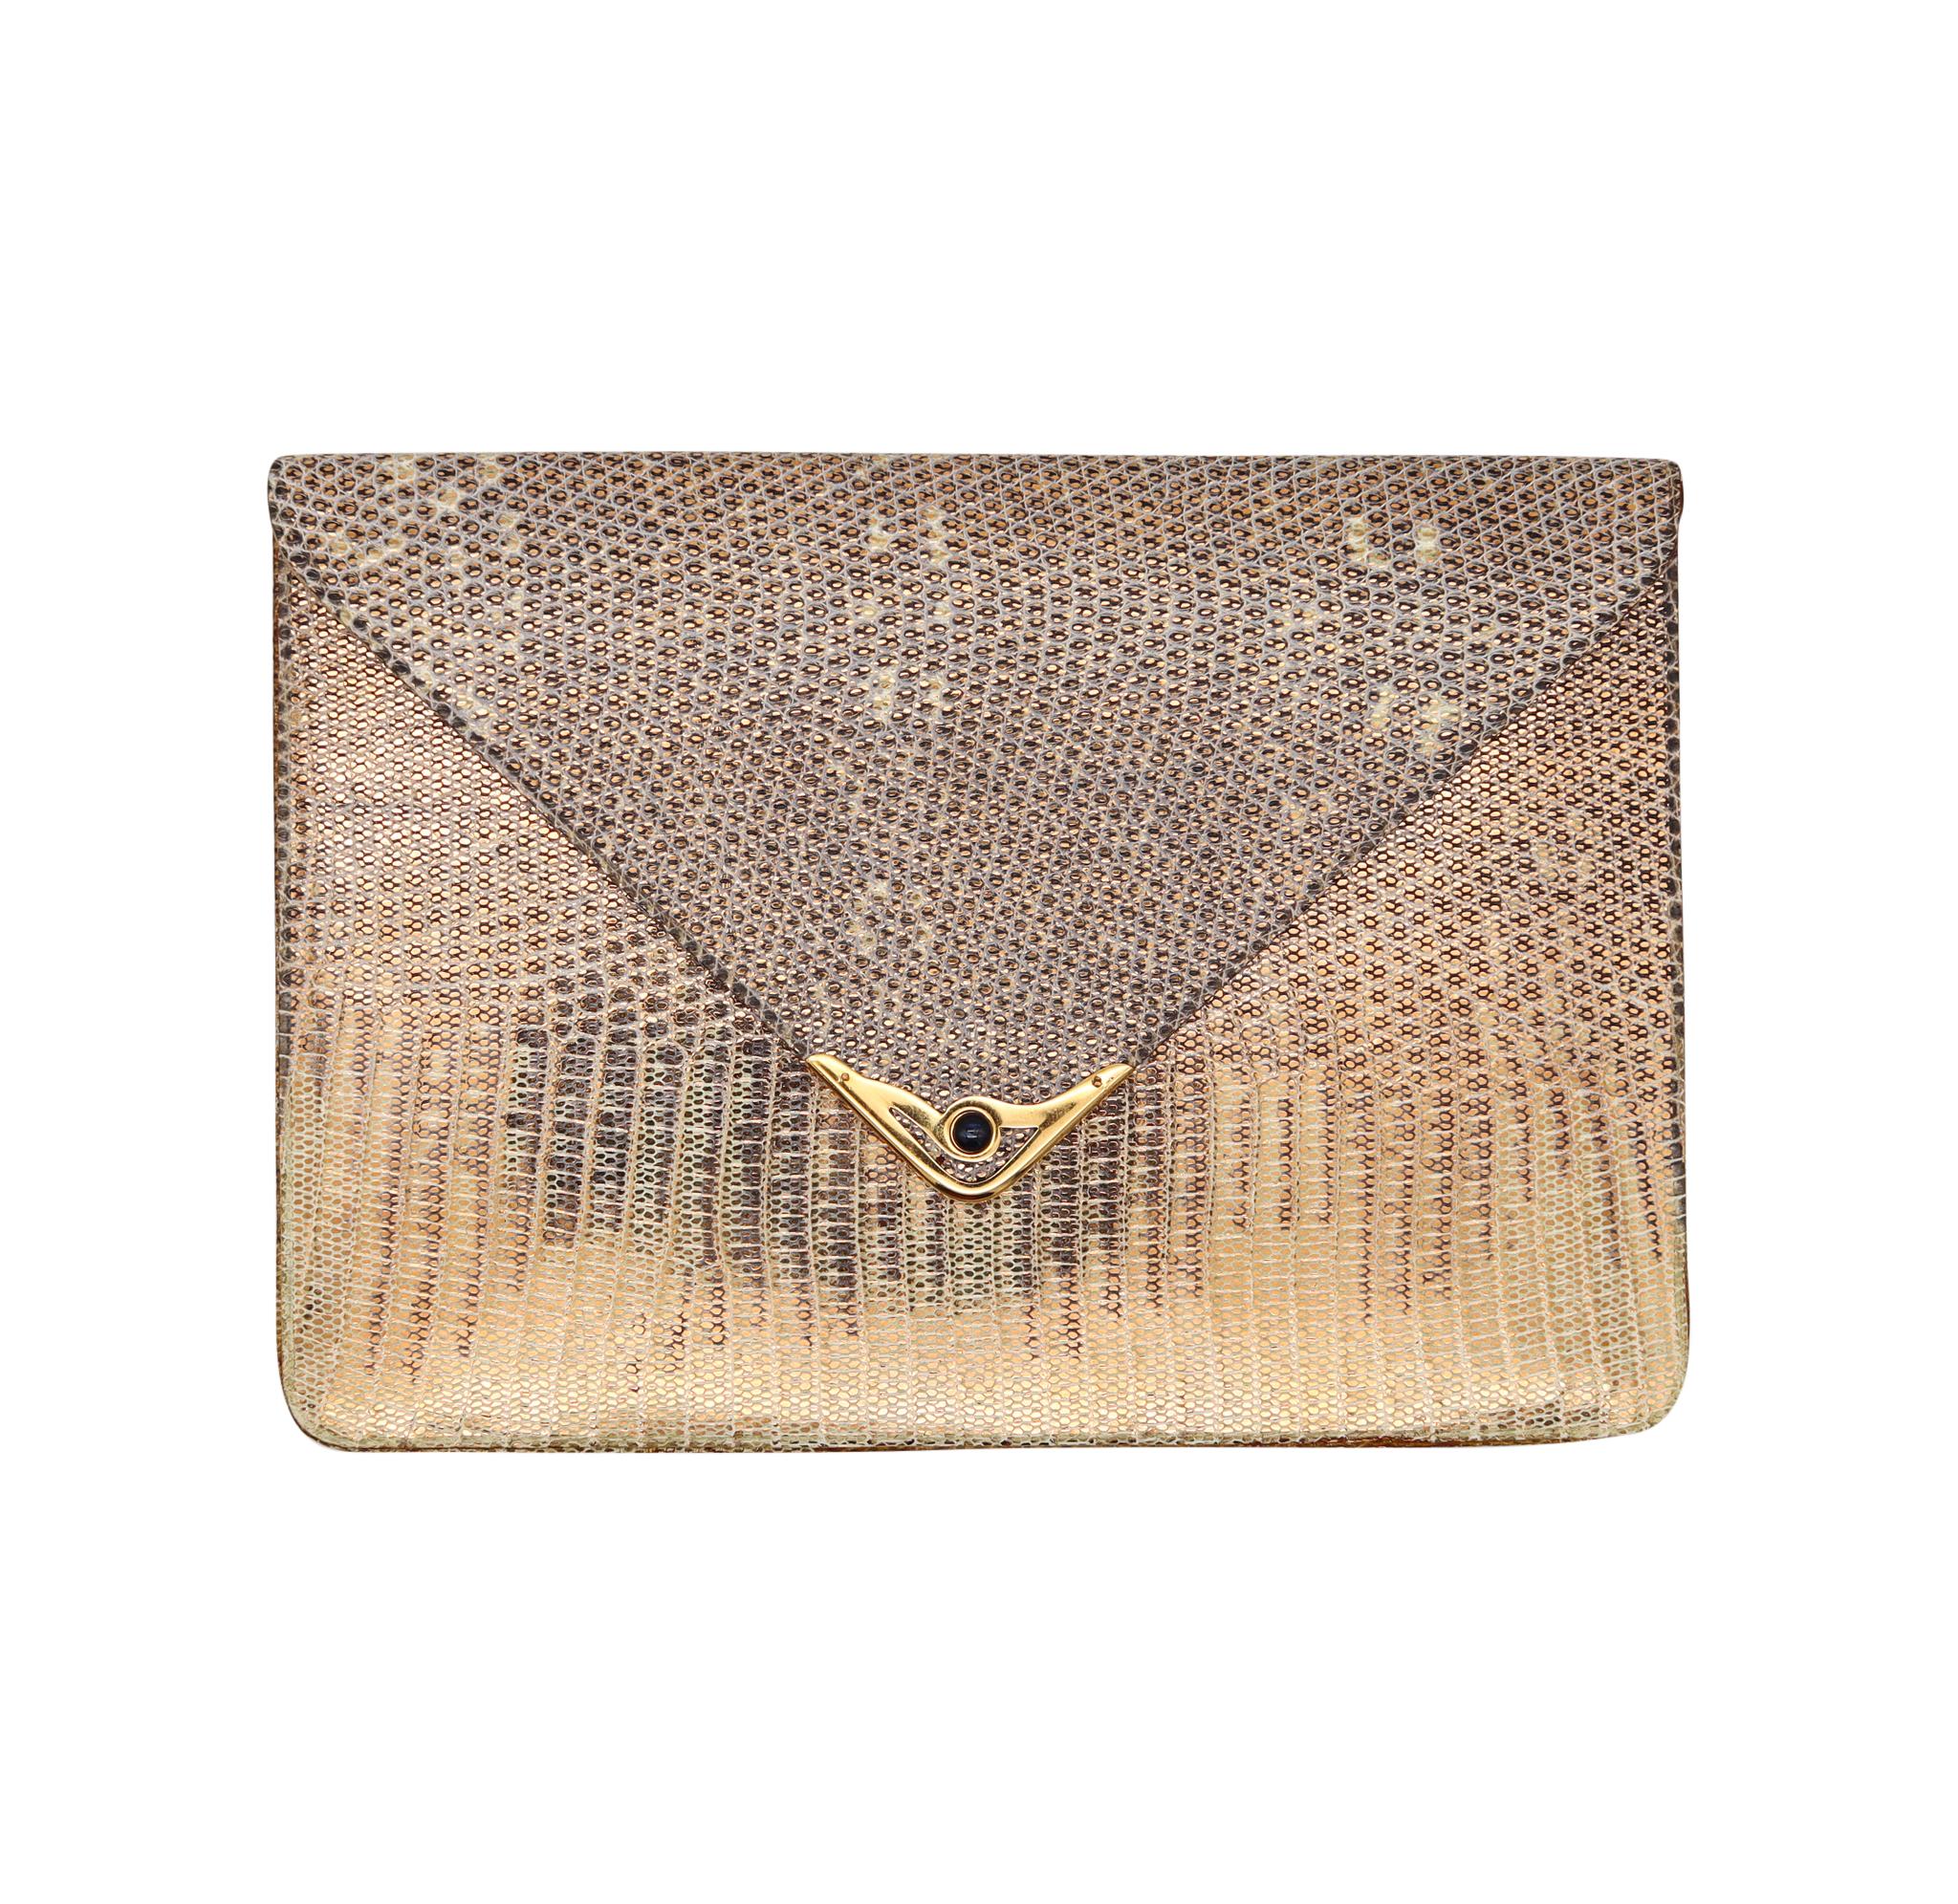 Eine von Cartier Paris entworfene Brieftaschen-Minaudière.

Eine außergewöhnliche, schöne und äußerst seltene Brieftasche Minaudiere, die in Paris Frankreich von dem Luxushaus Cartier in den 1970er Jahren geschaffen wurde. Dieses unglaubliche Stück